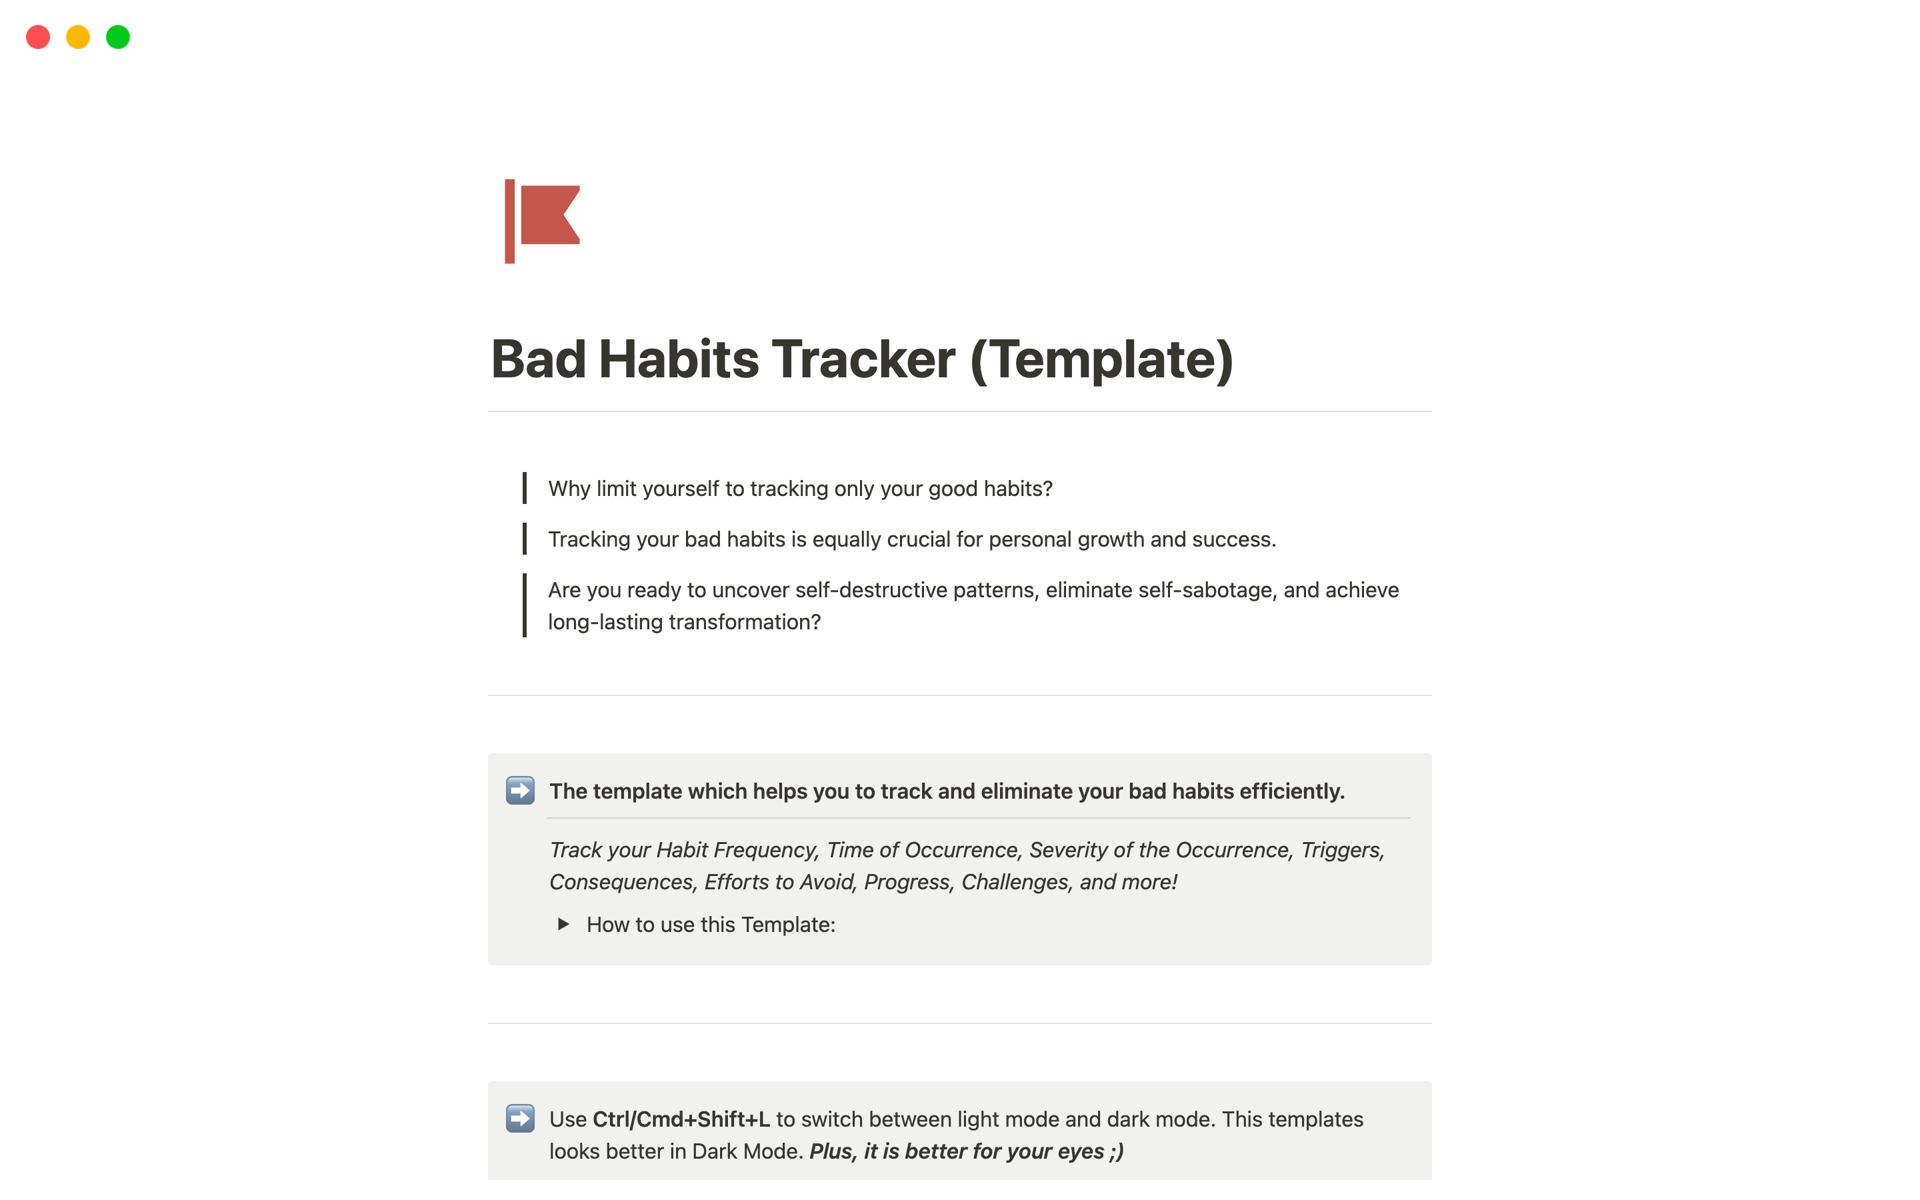 Aperçu du modèle de Bad Habits Tracker